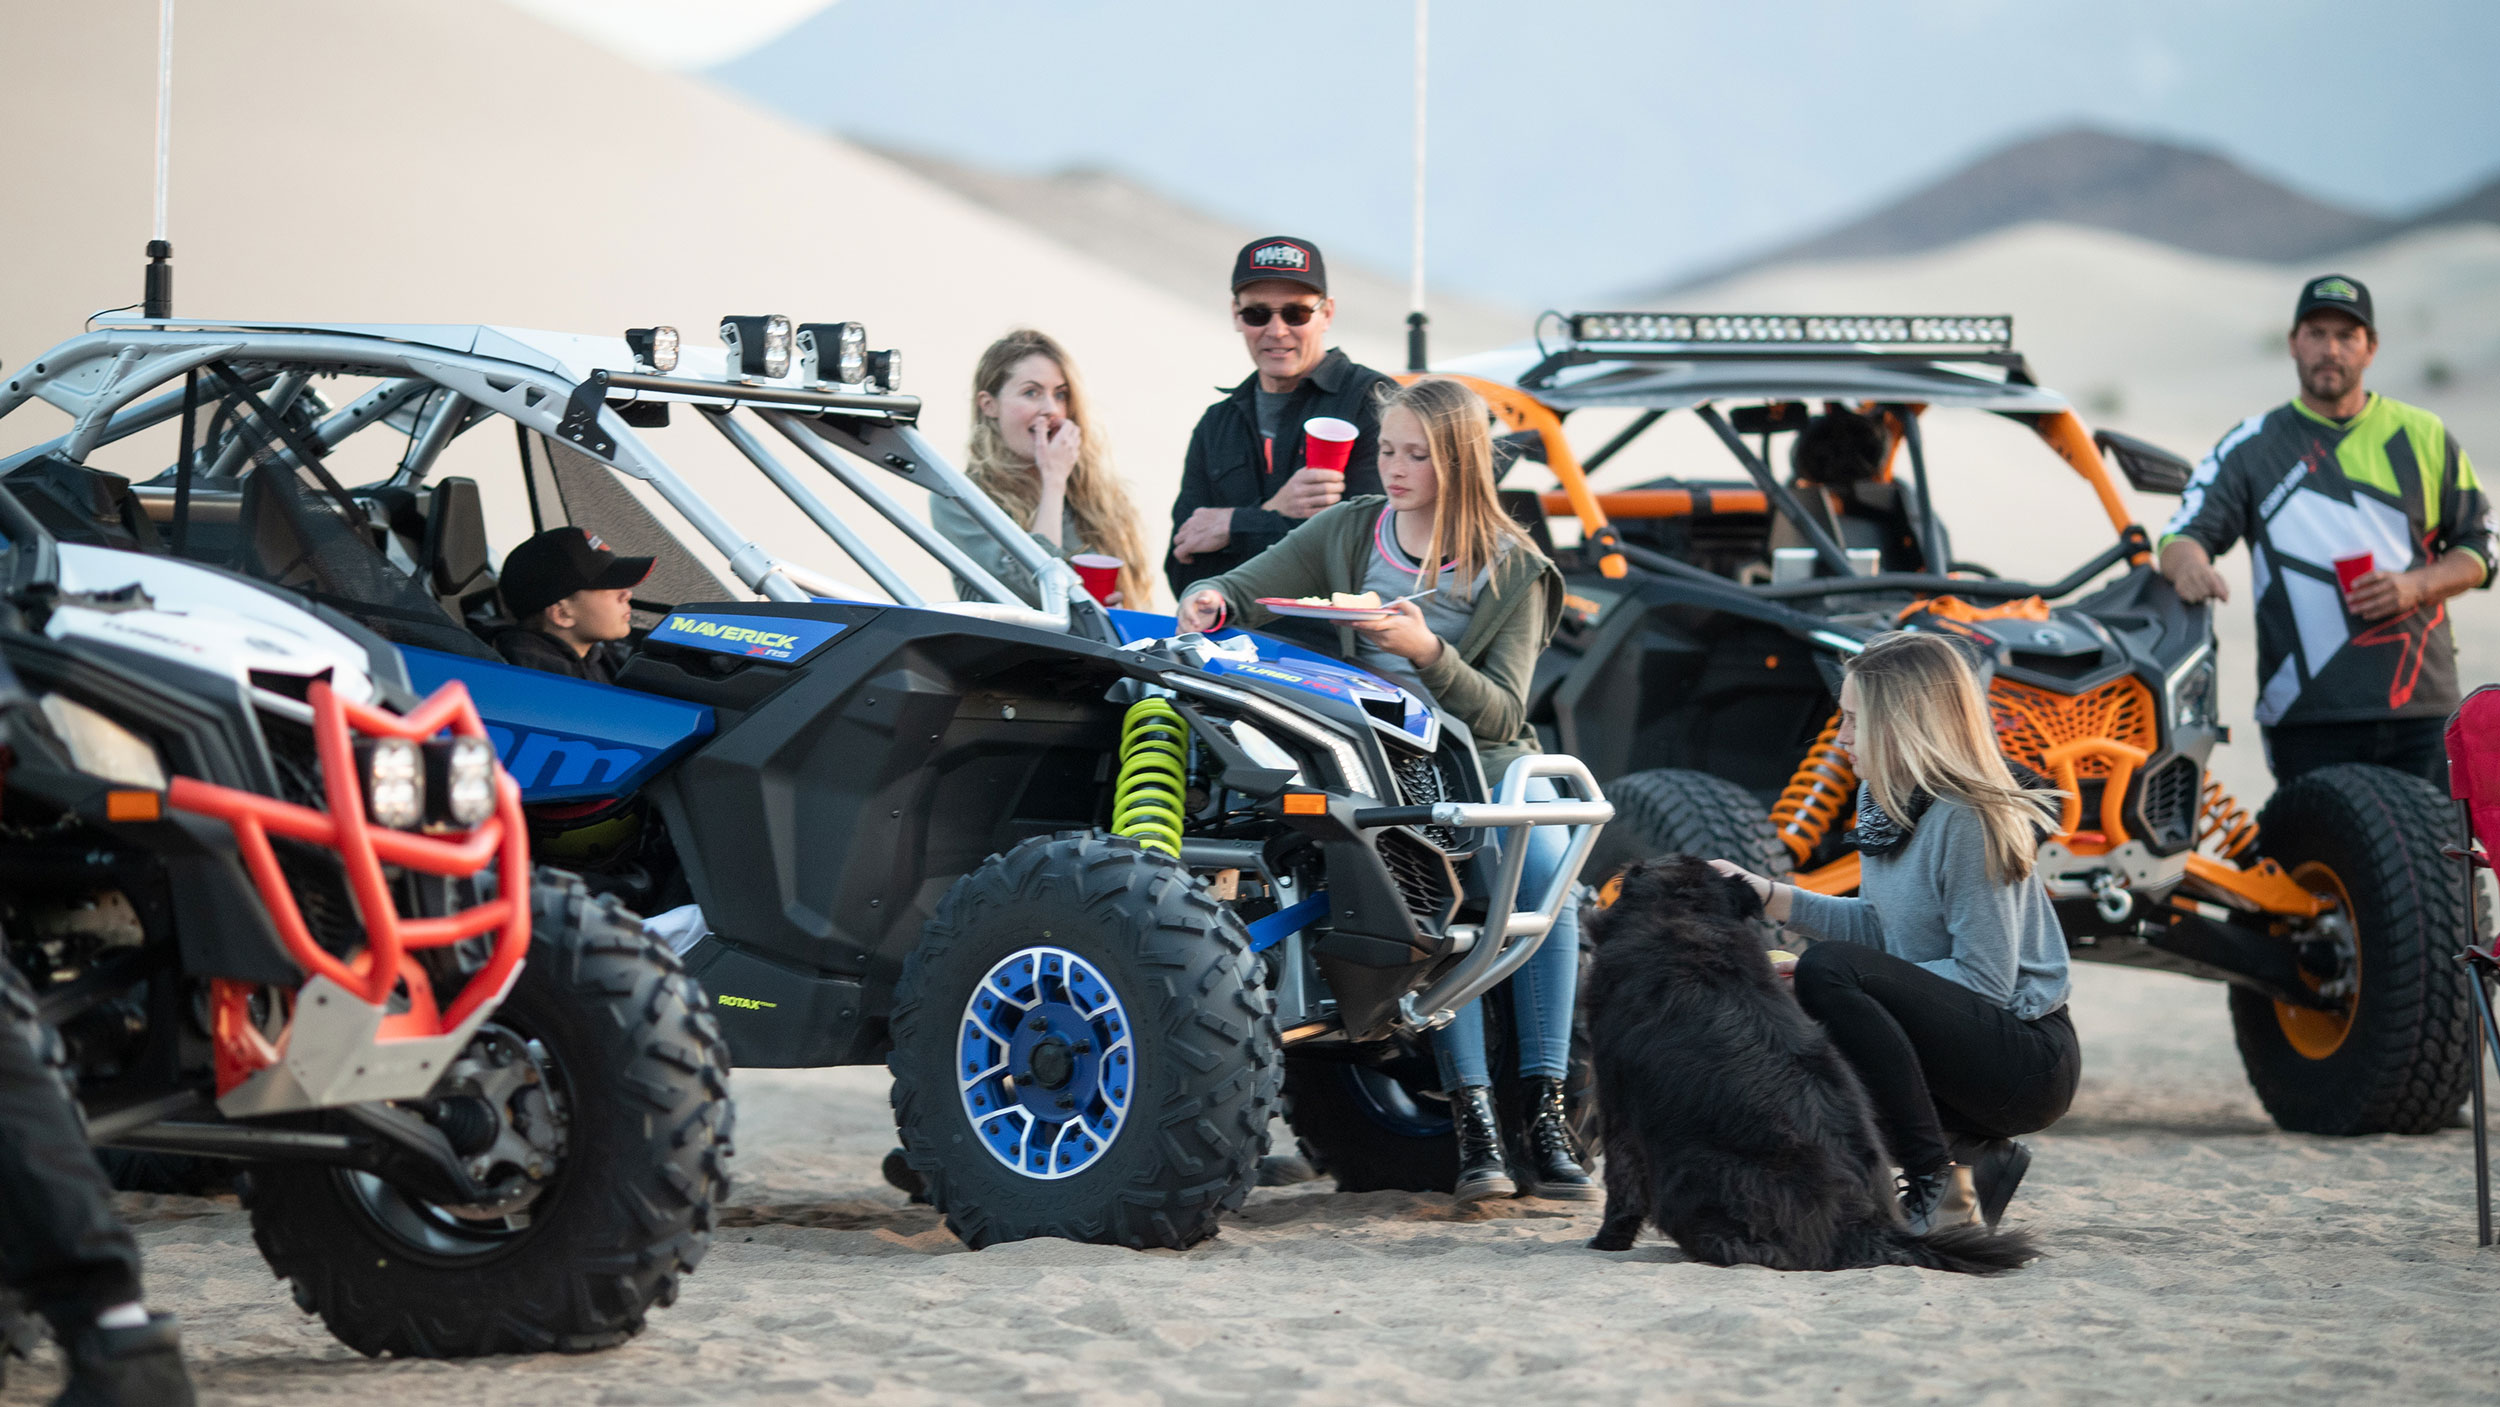 egy csapat fiatal bandázik a homokos terepen három maverick mellett és egy kutyával